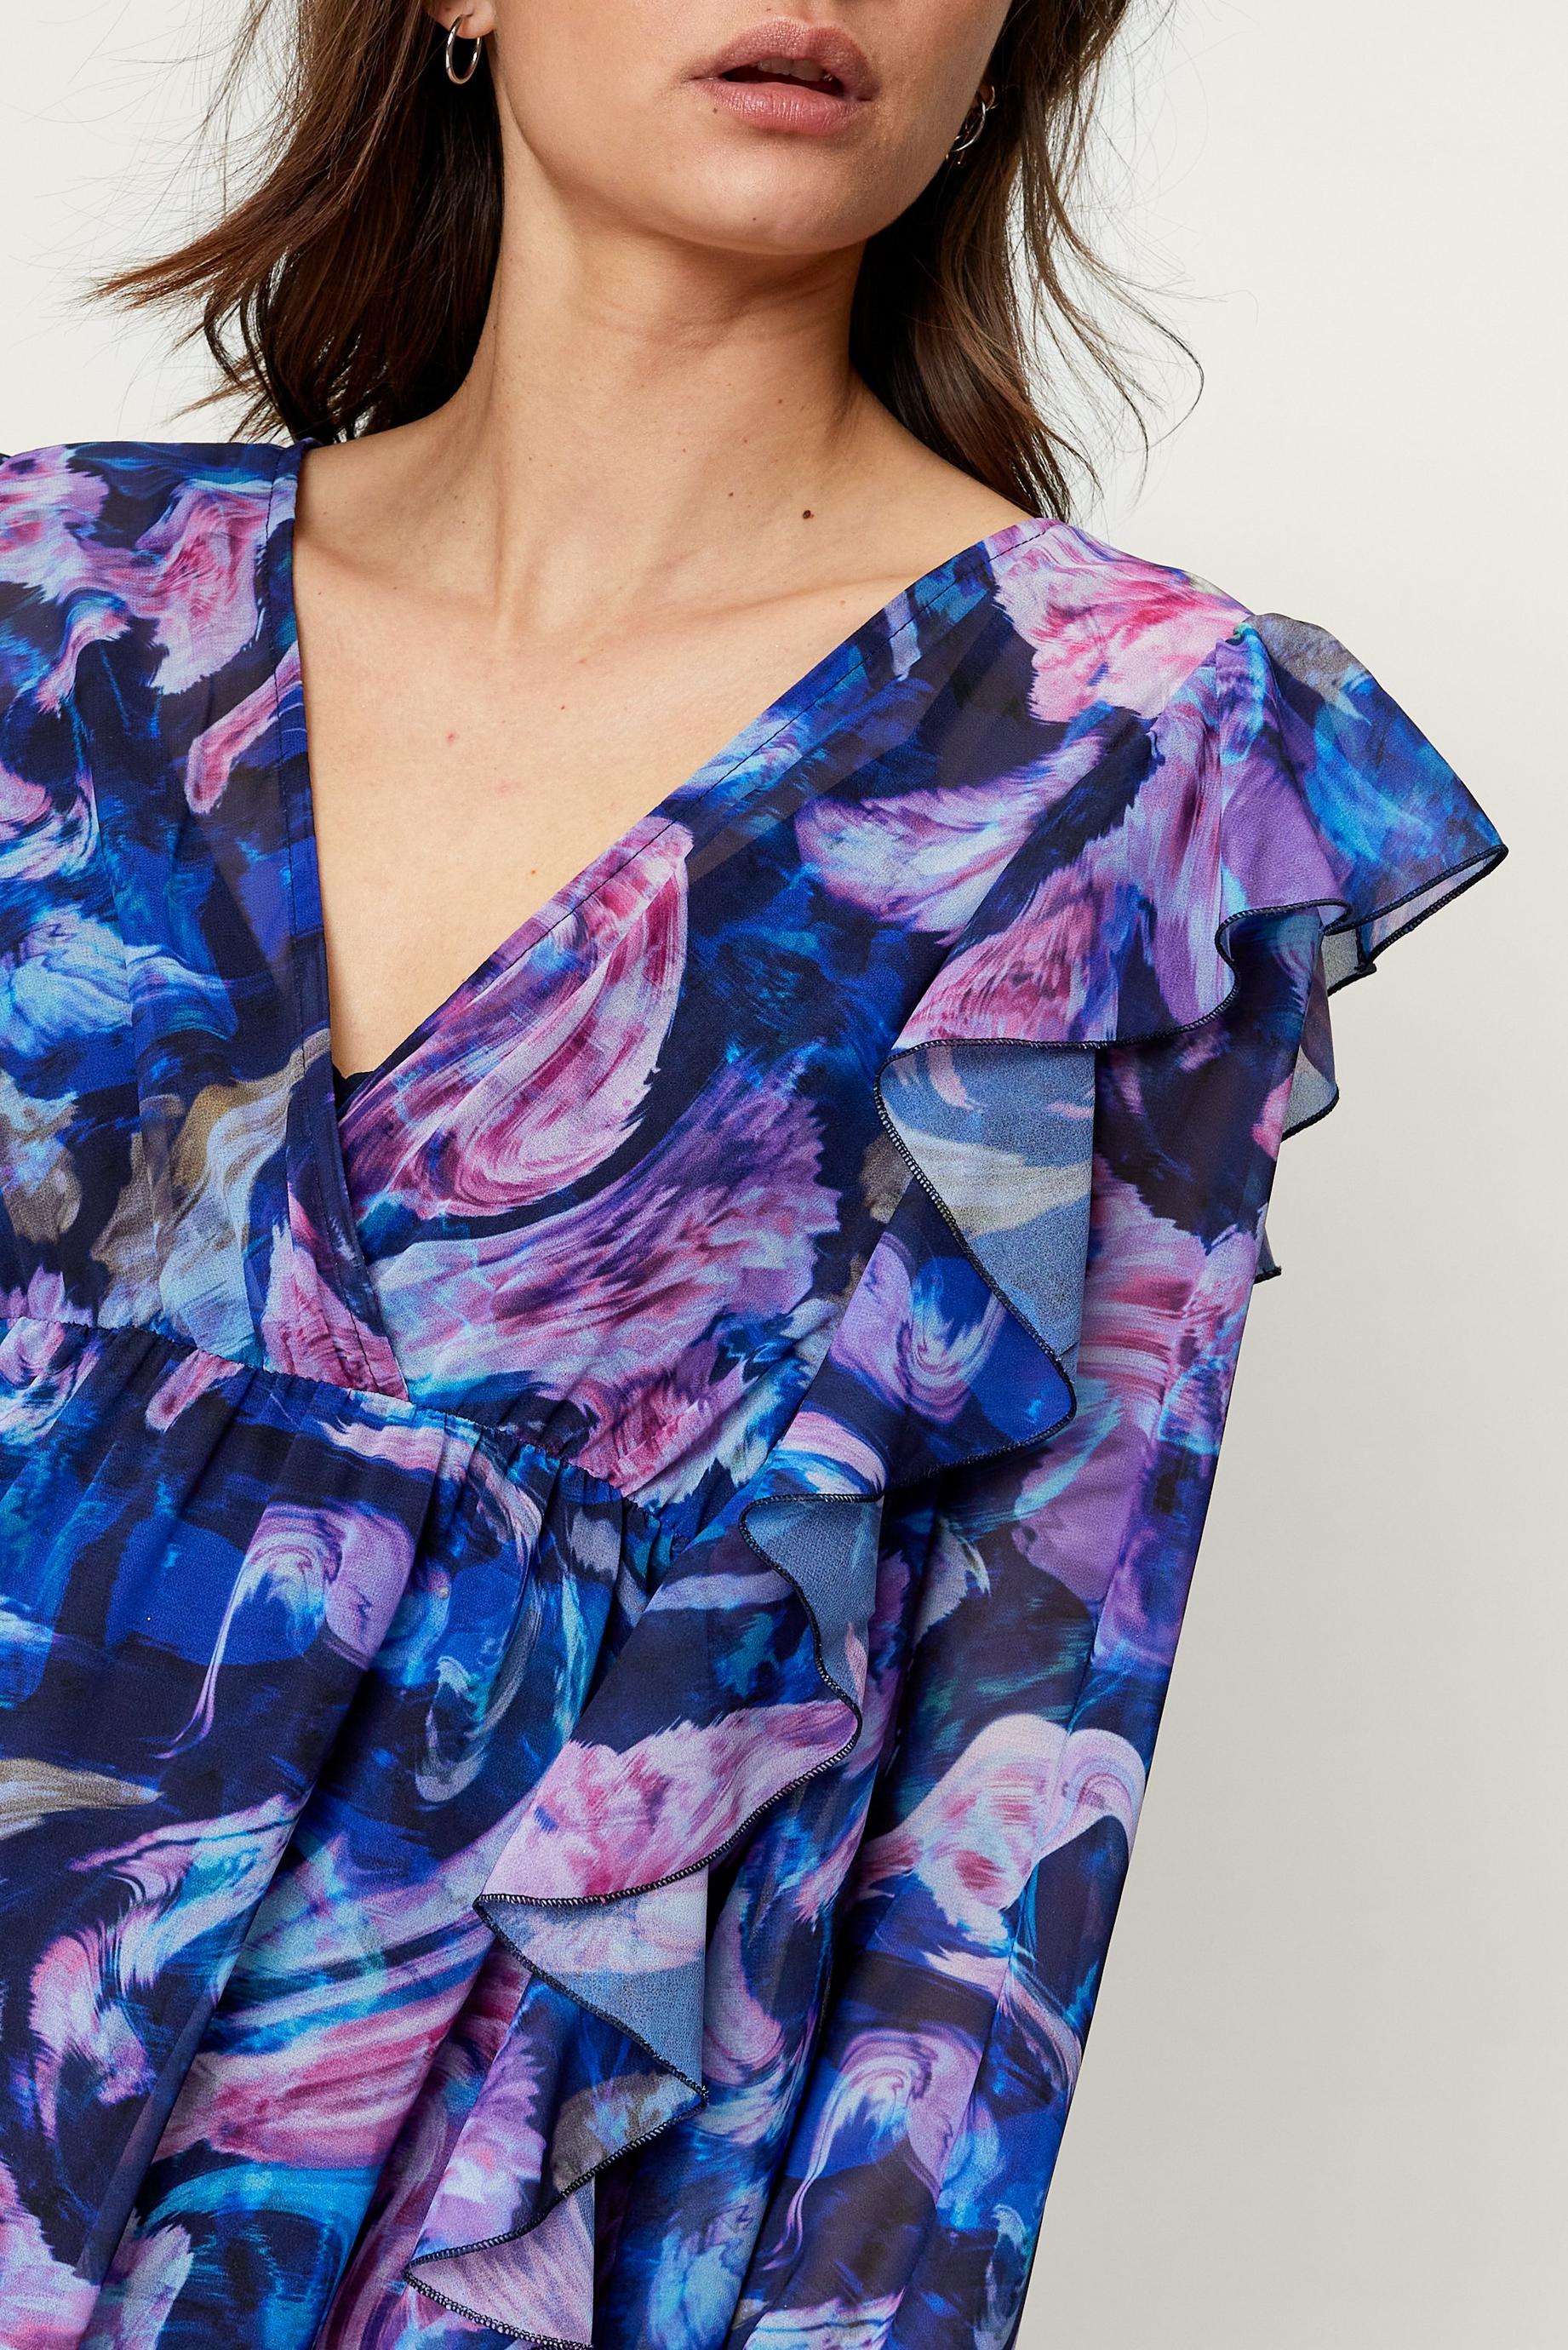 Blurred Floral Print Ruffle Maxi Dress